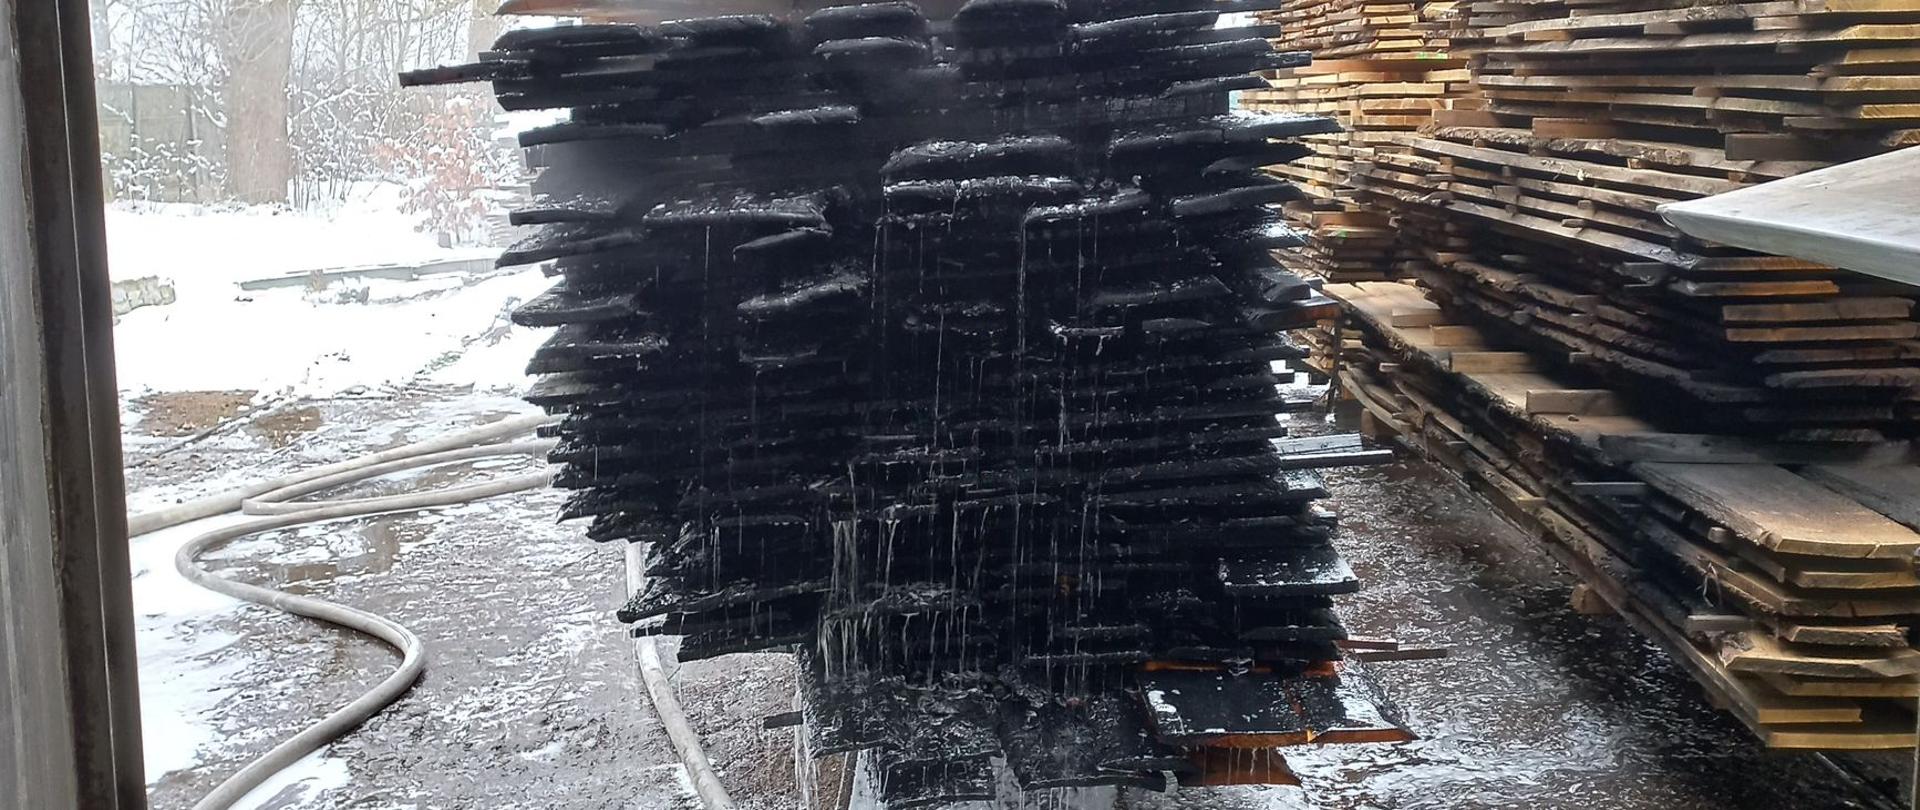 Zdjęcie przedstawia spalone deski na terenie tartaku, gdzie doszło do pożaru.
W tle inne deski i drzewa.
